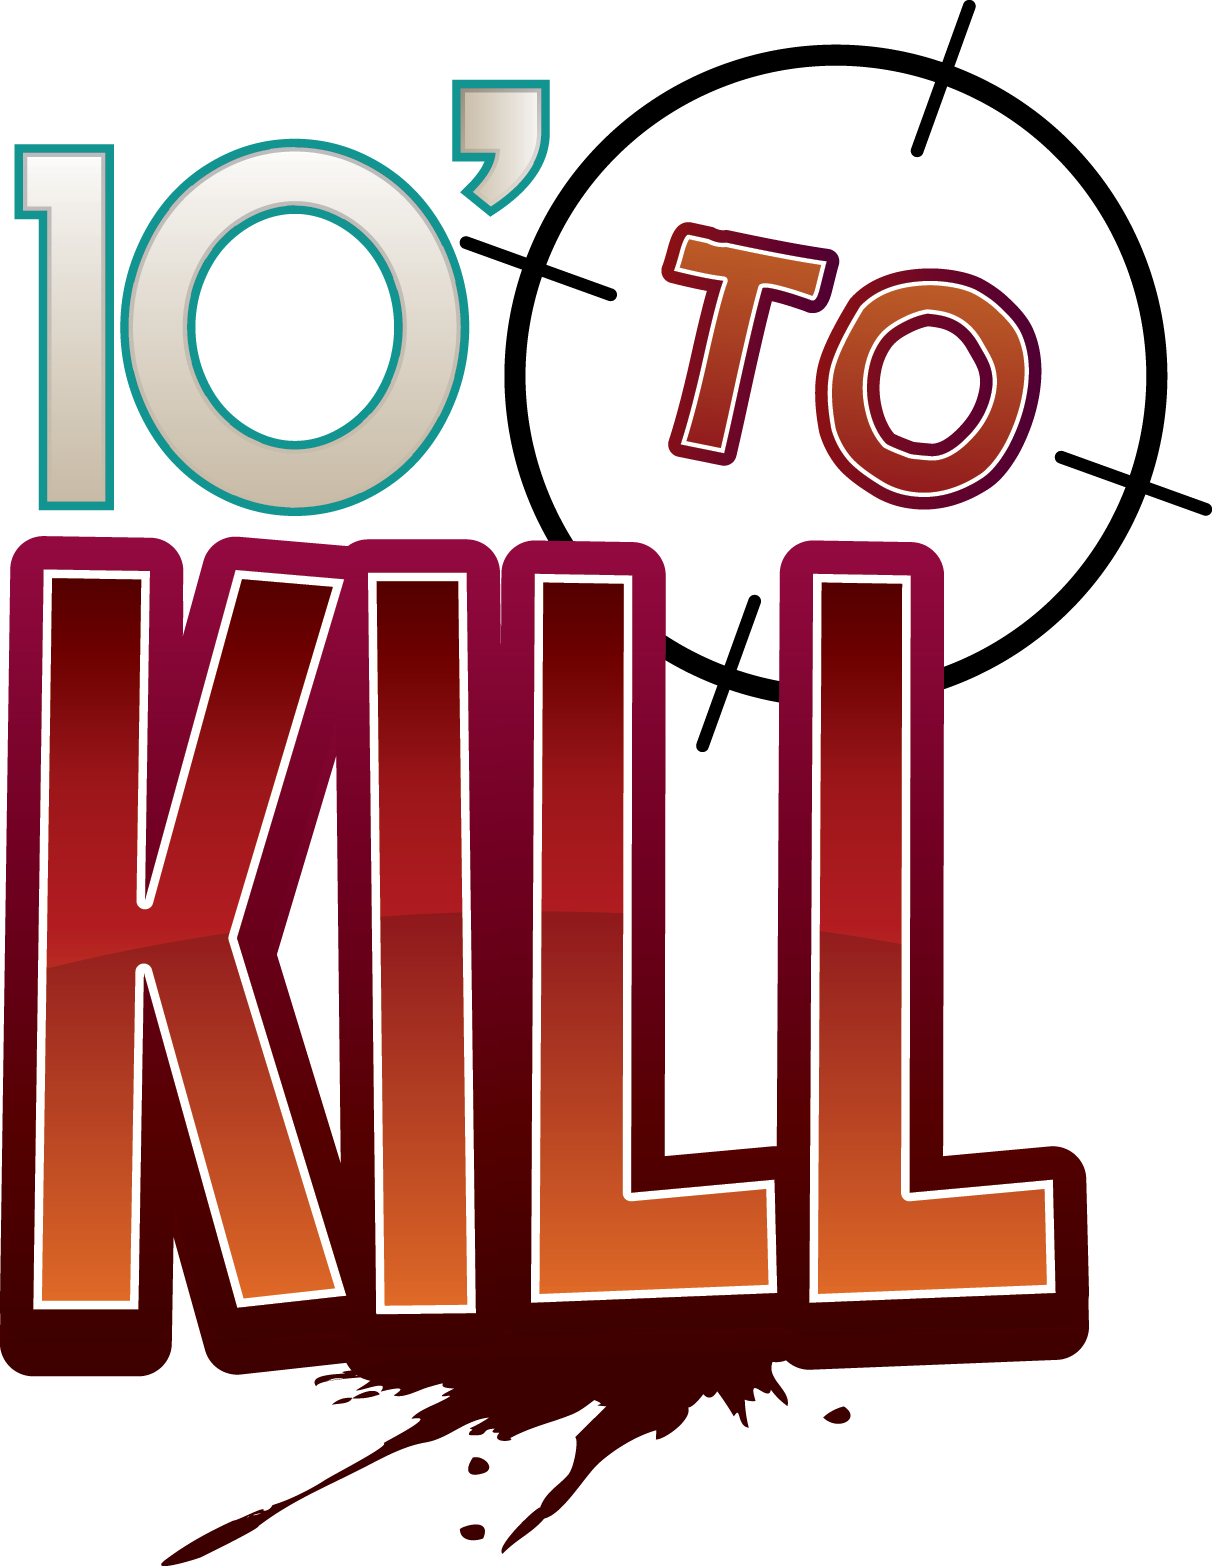 10' To Kill Logo - Dude Games 10 Minutes To Kill (1212x1566)